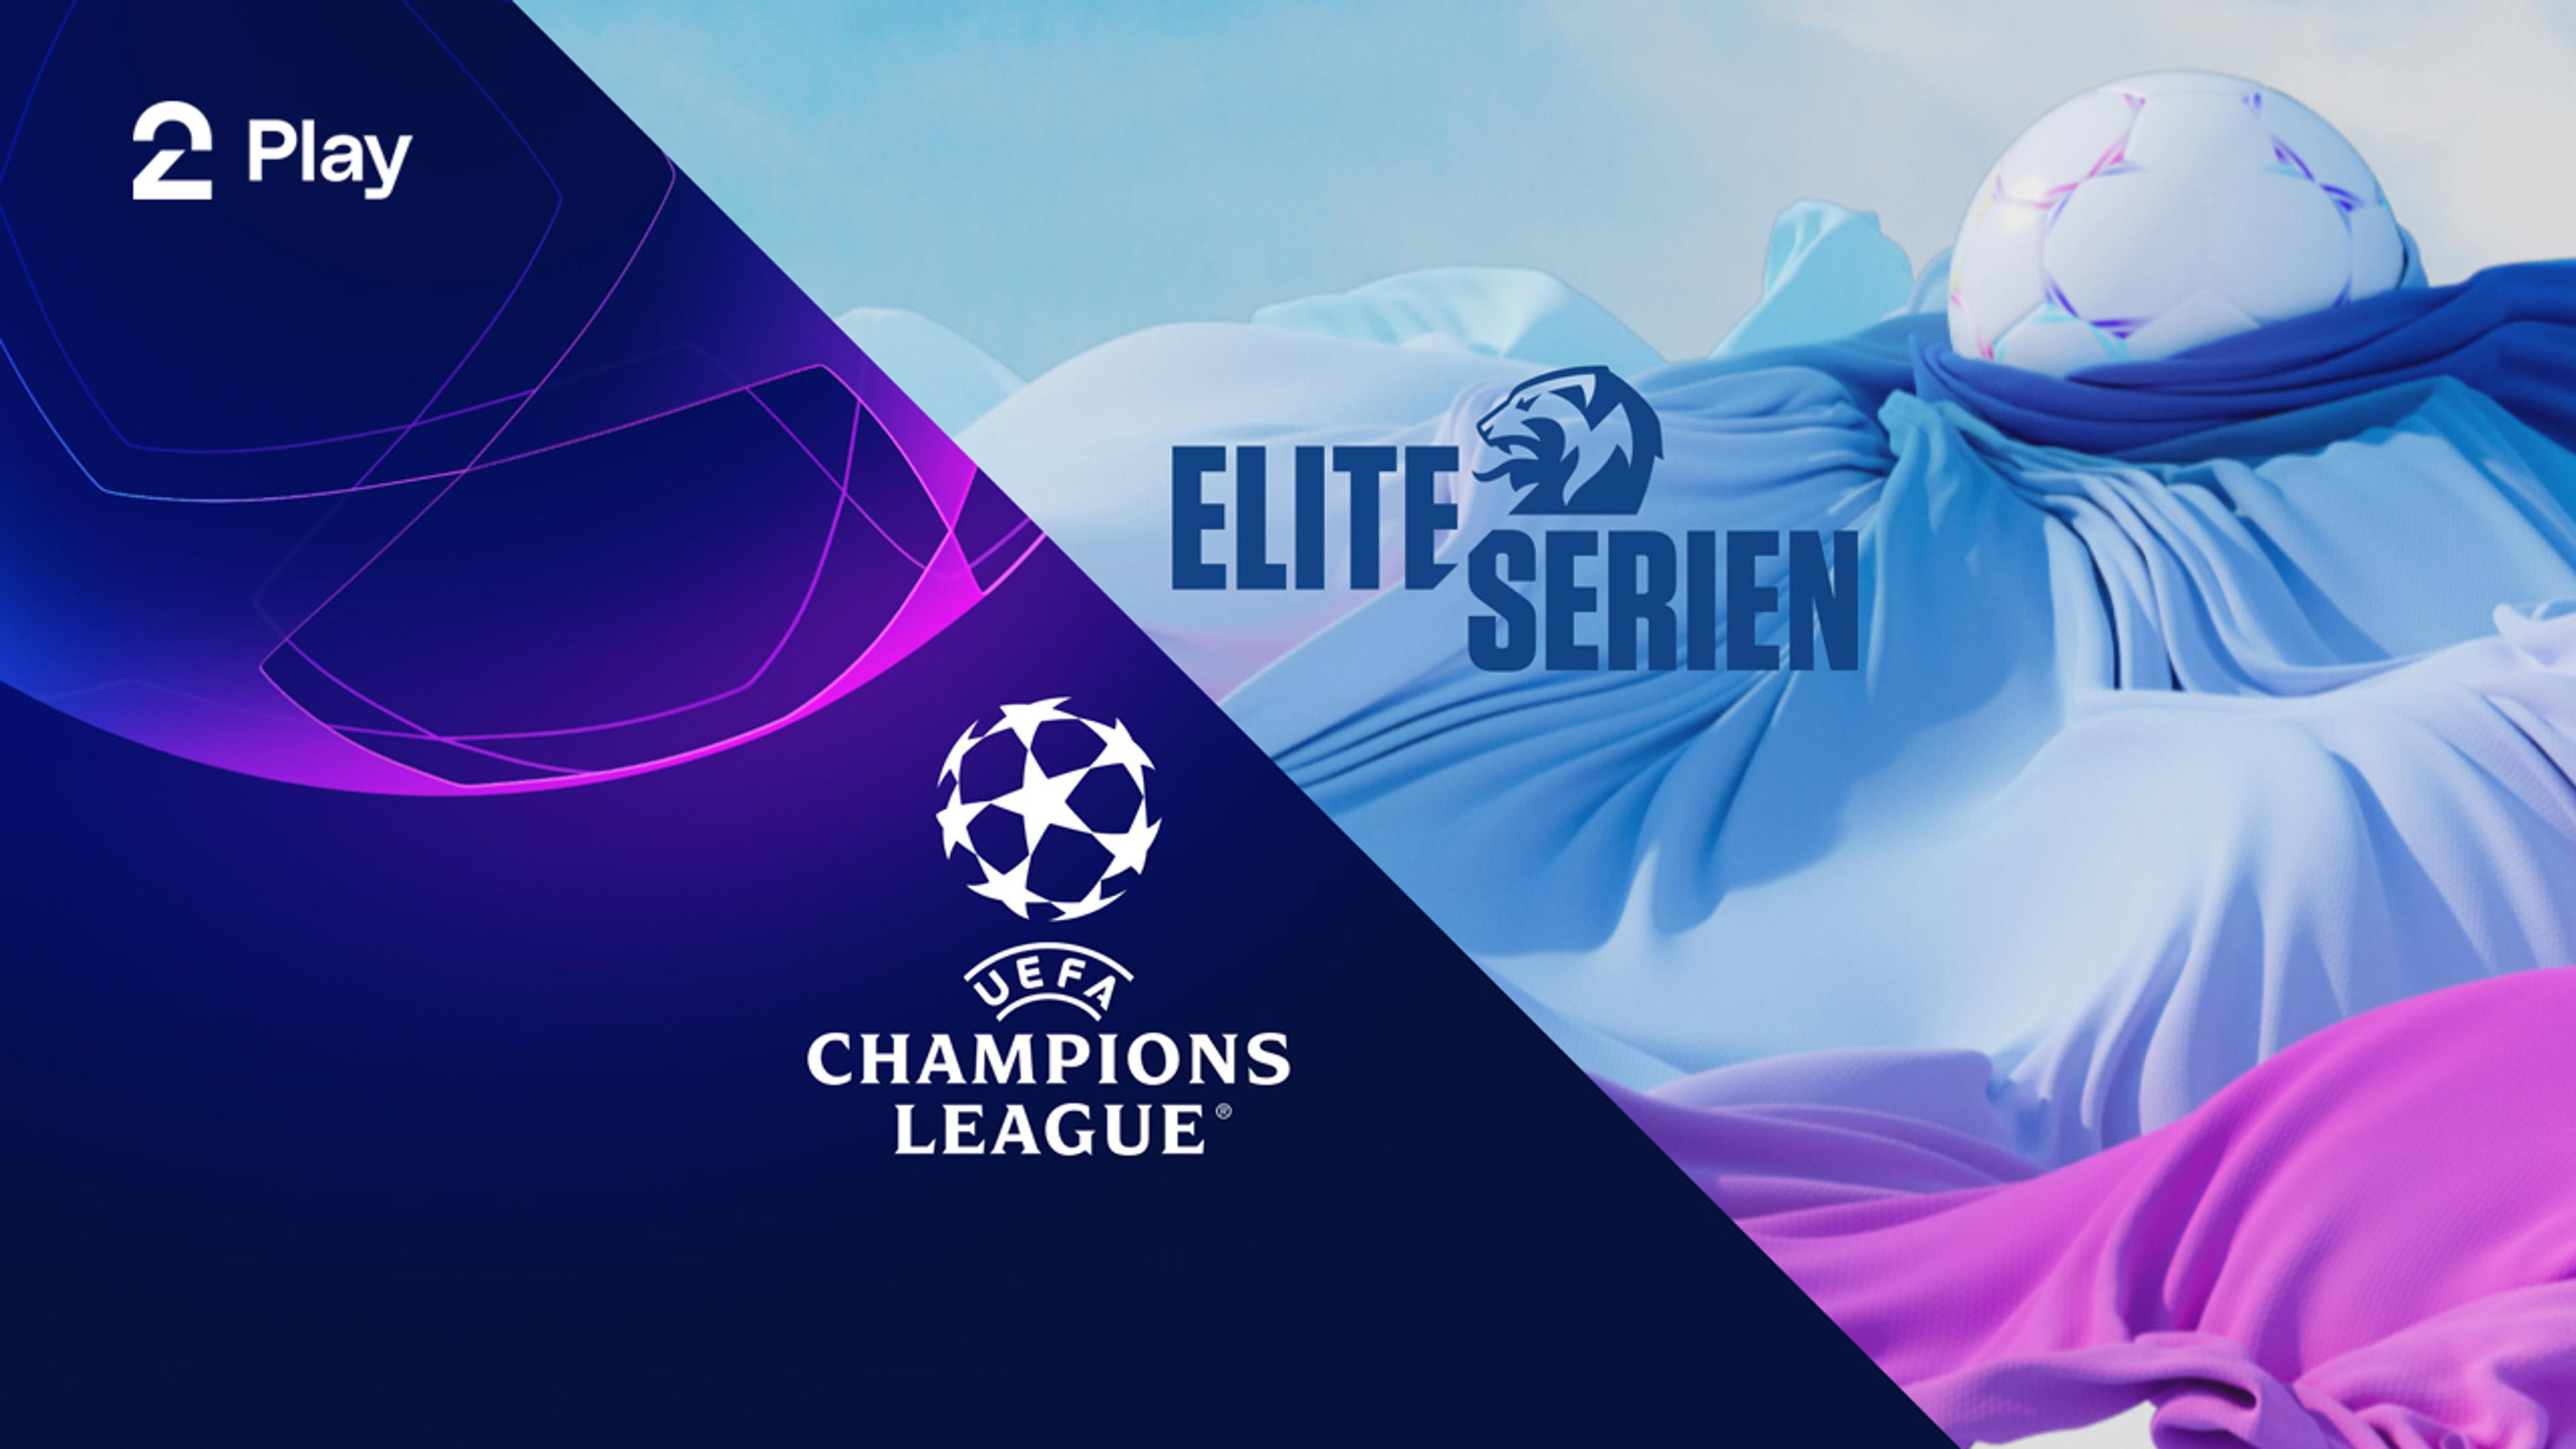 UEFA Champions League logo og Eliteserien logo sammen med respektive bakgrunner.